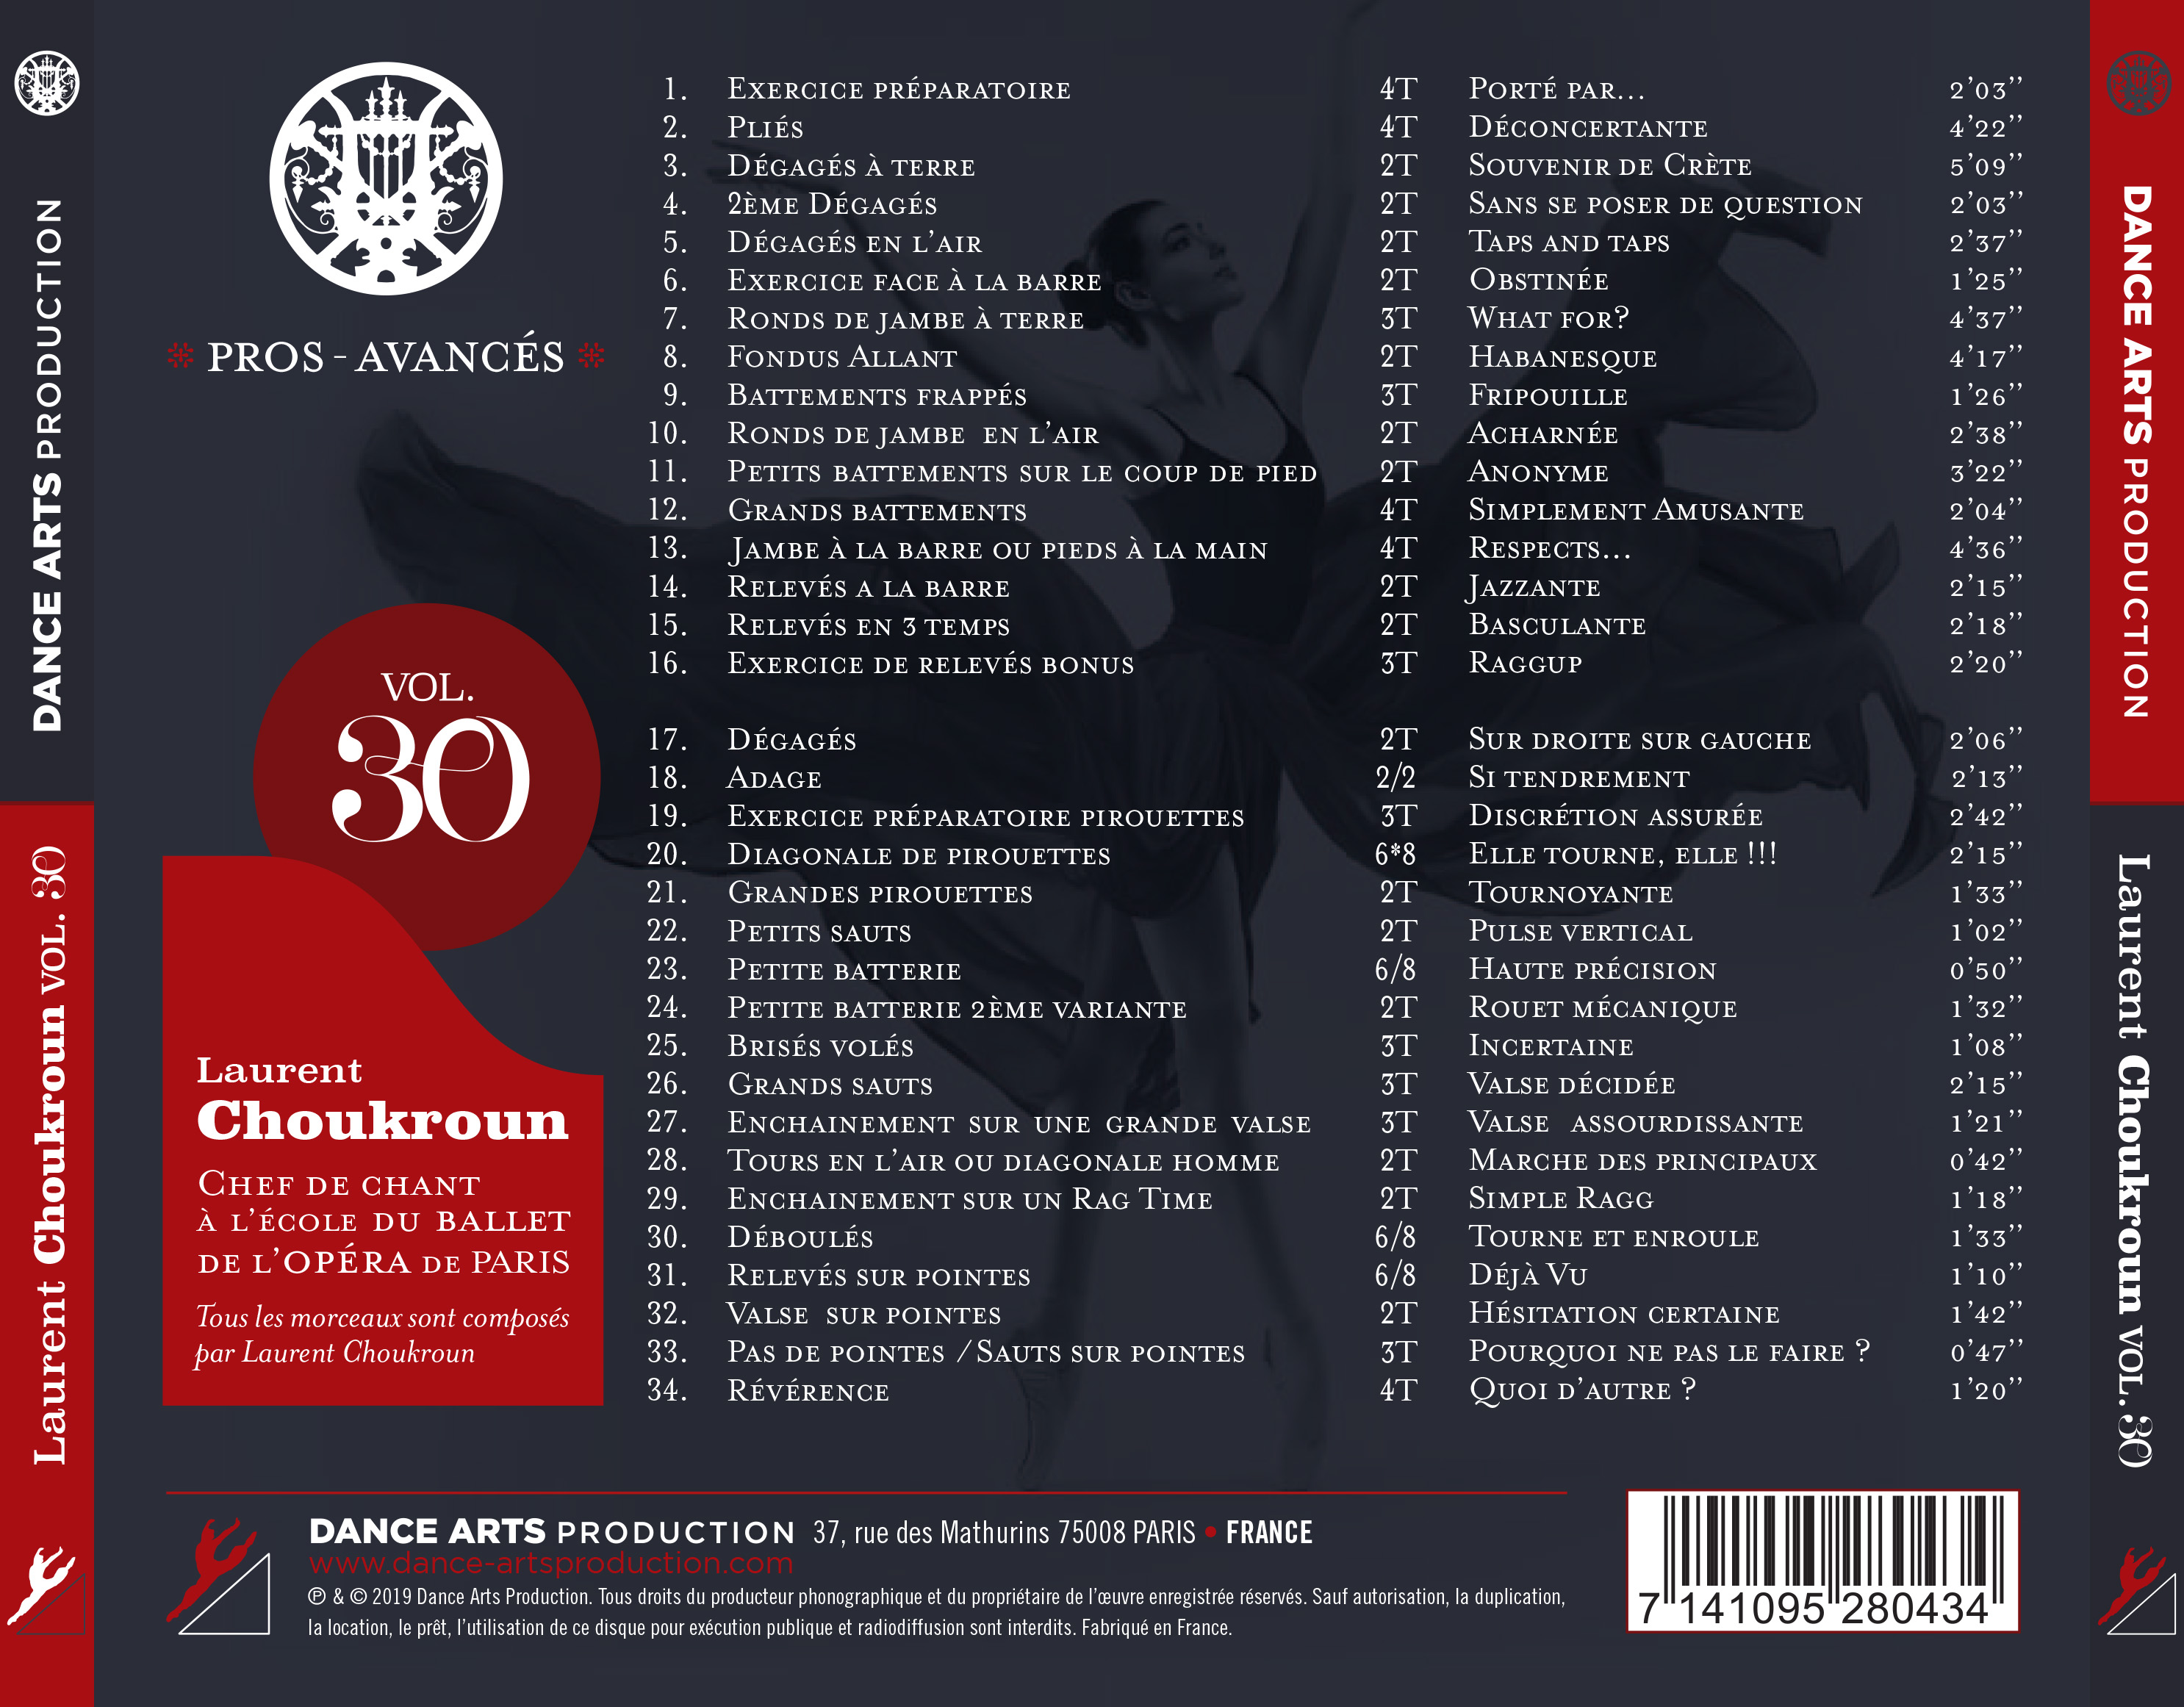 CD Vol 30 